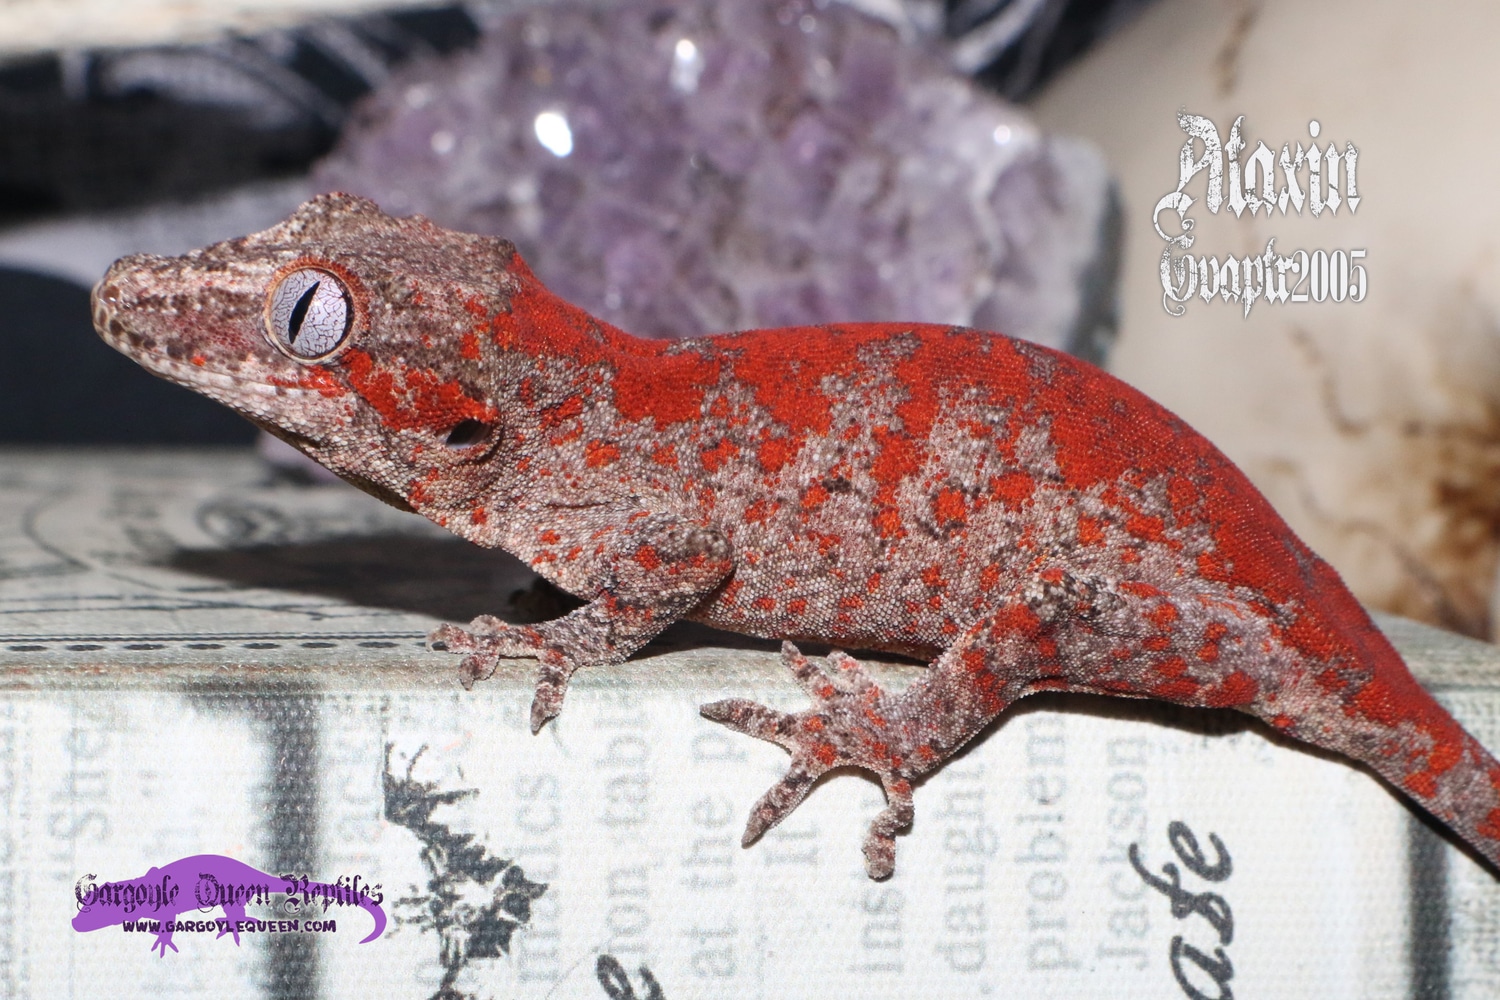 "Ataxin" Red Skeleton Ultra Blotch Gargoyle Gecko by Gargoyle Queen Reptiles